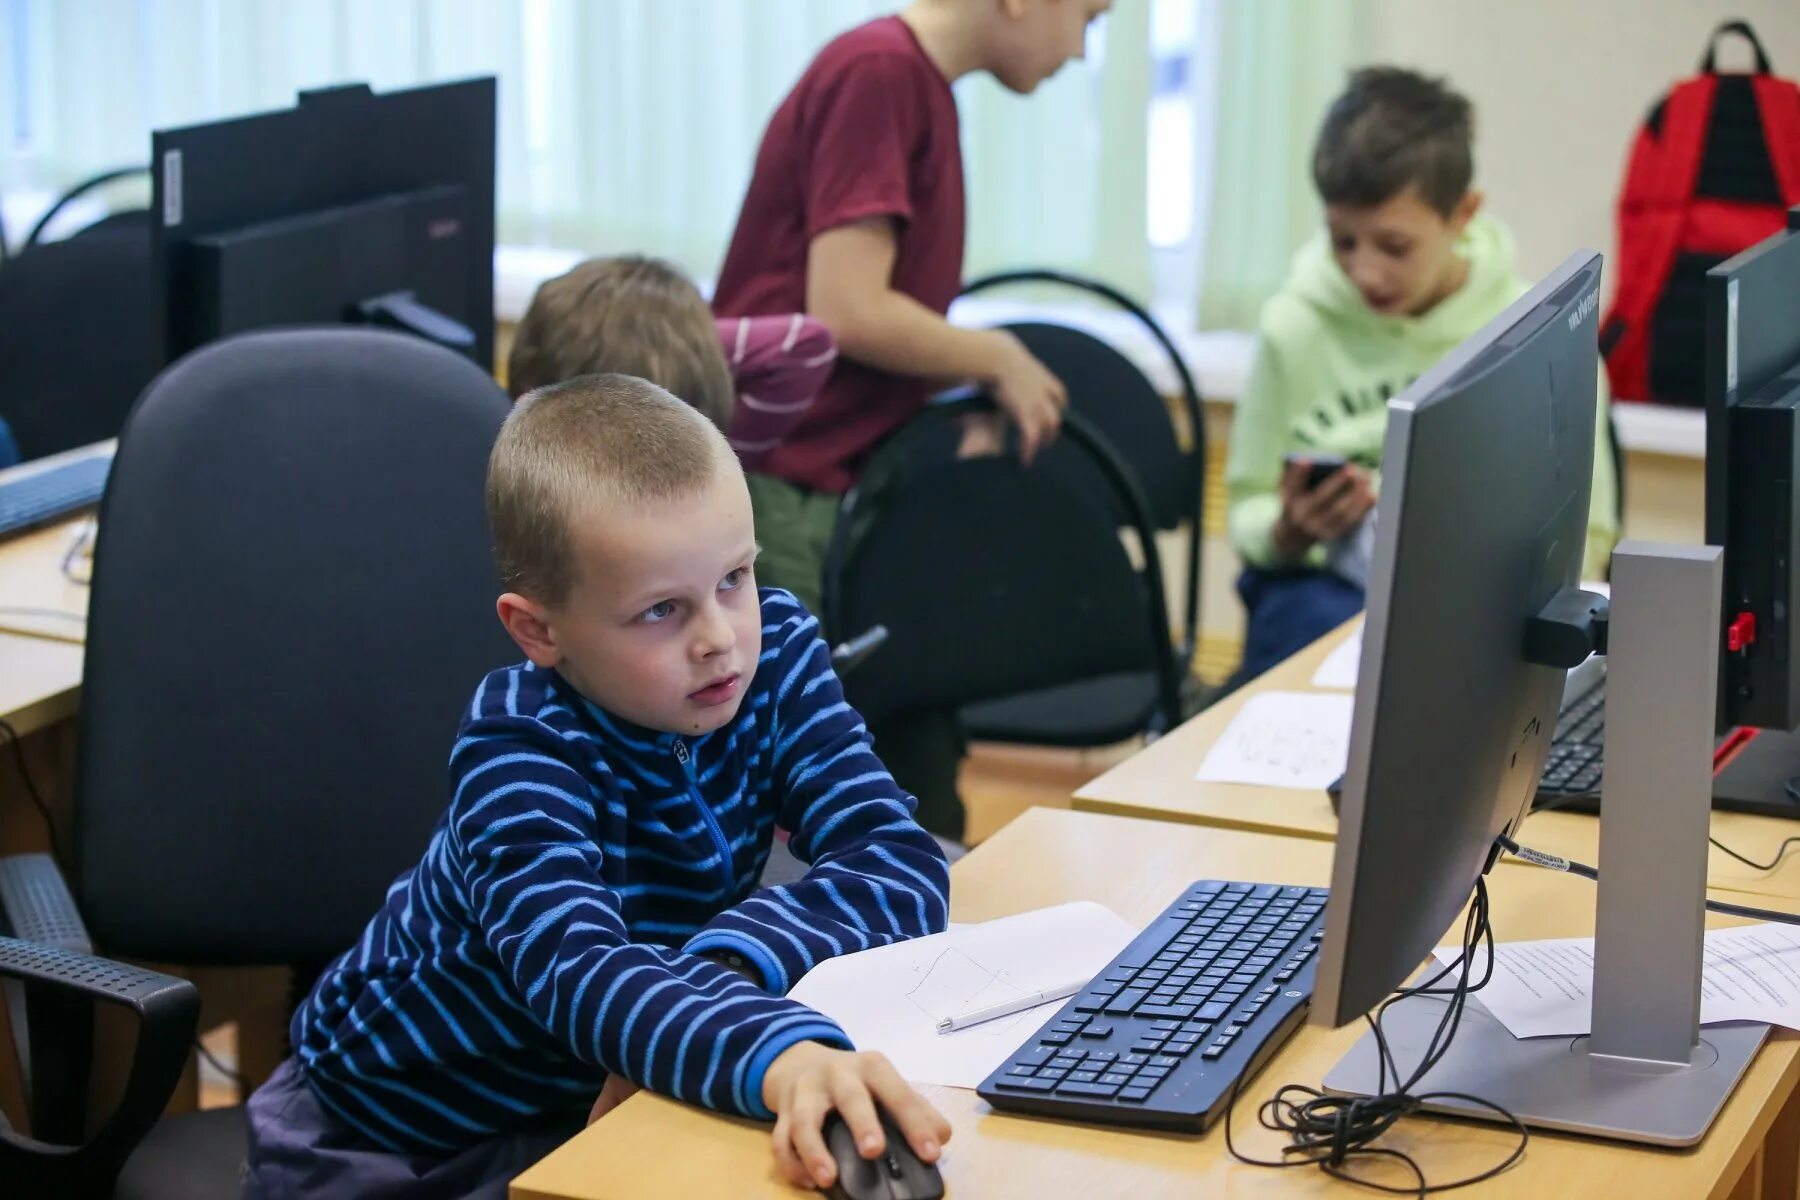 В классе установили новый компьютер. Школьный компьютер. Школьники России. Компьютер в школе. Цифровая школа.